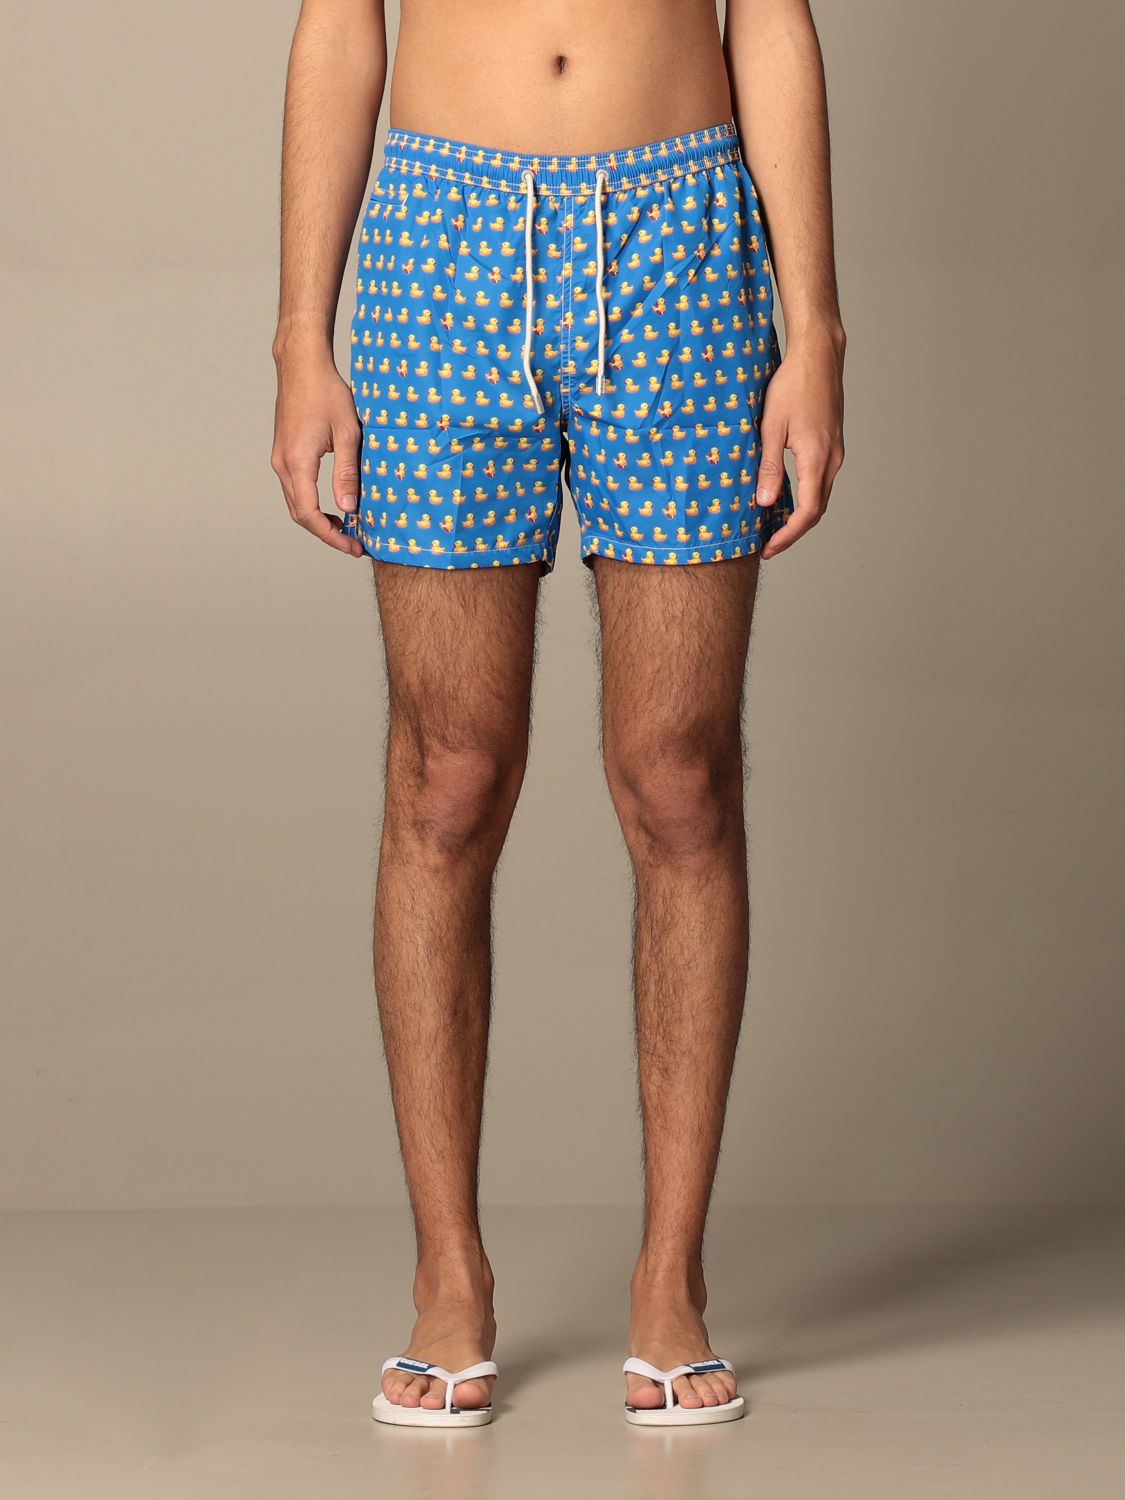 blue Louis Vuitton Shorts for Men - Vestiaire Collective